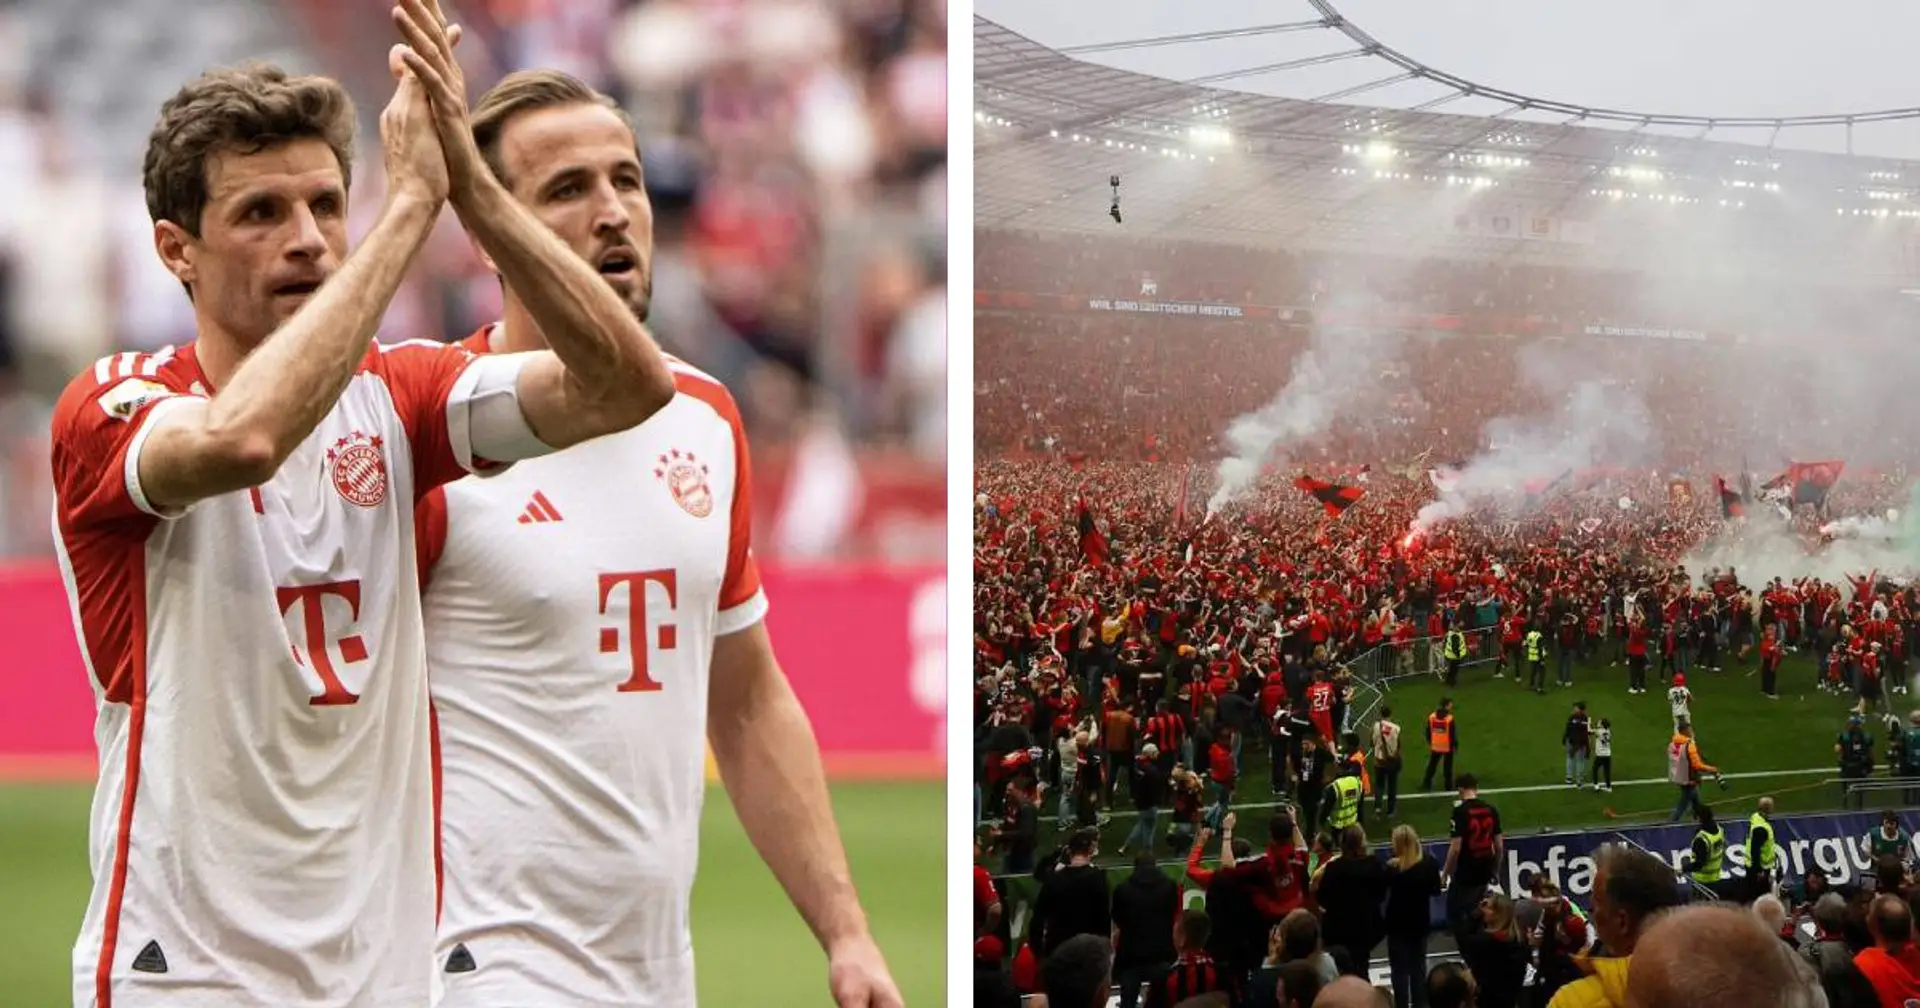 Müller gratuliert Bayer zum Meistertitel - Fans fragen sich, warum Thomas ein Bild ausgerechnet mit Kane gepostet hat